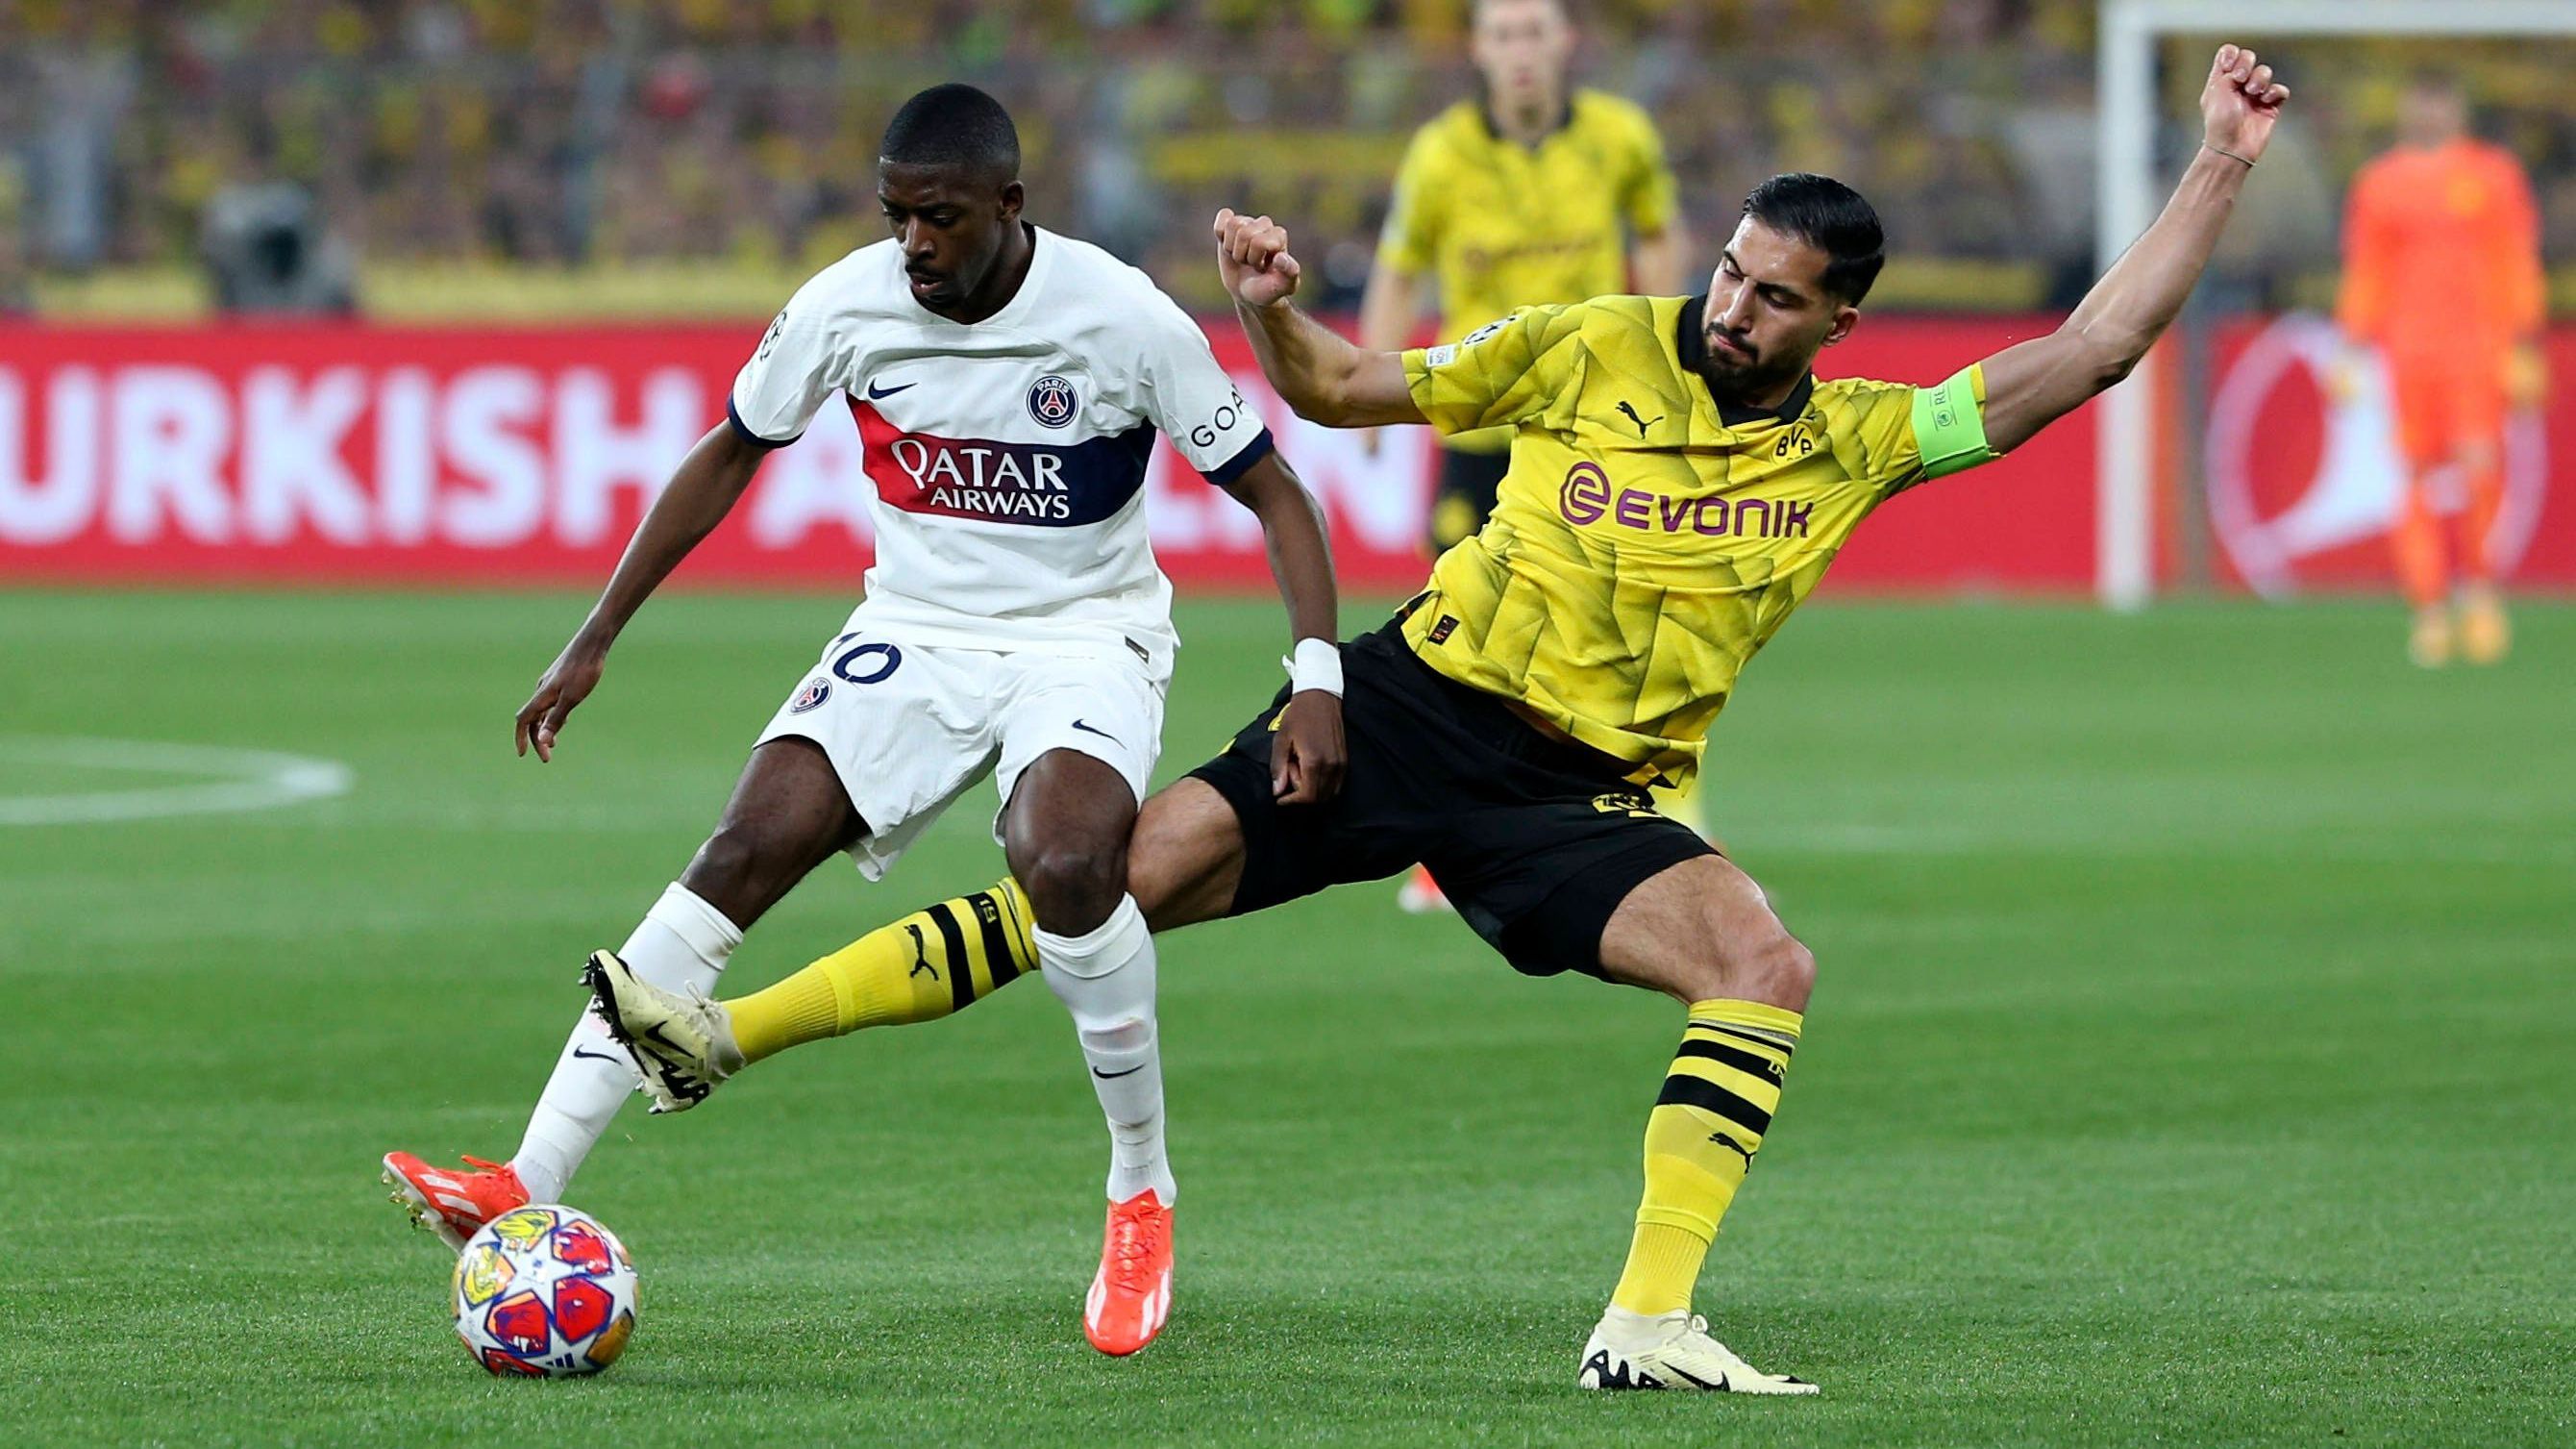 <strong>Emre Can (Borussia Dortmund)</strong><br>Der Kapitän geht durch Körpersprache voran. Setzt zu Beginn mit taktischen Fouls Zeichen. Spielerisch gelingt ihm aber nicht sonderlich viel. Wählt lieber den Sicherheitsball, anstatt offensiver anzuschieben. <strong><em>ran</em>-Note:&nbsp;3</strong>